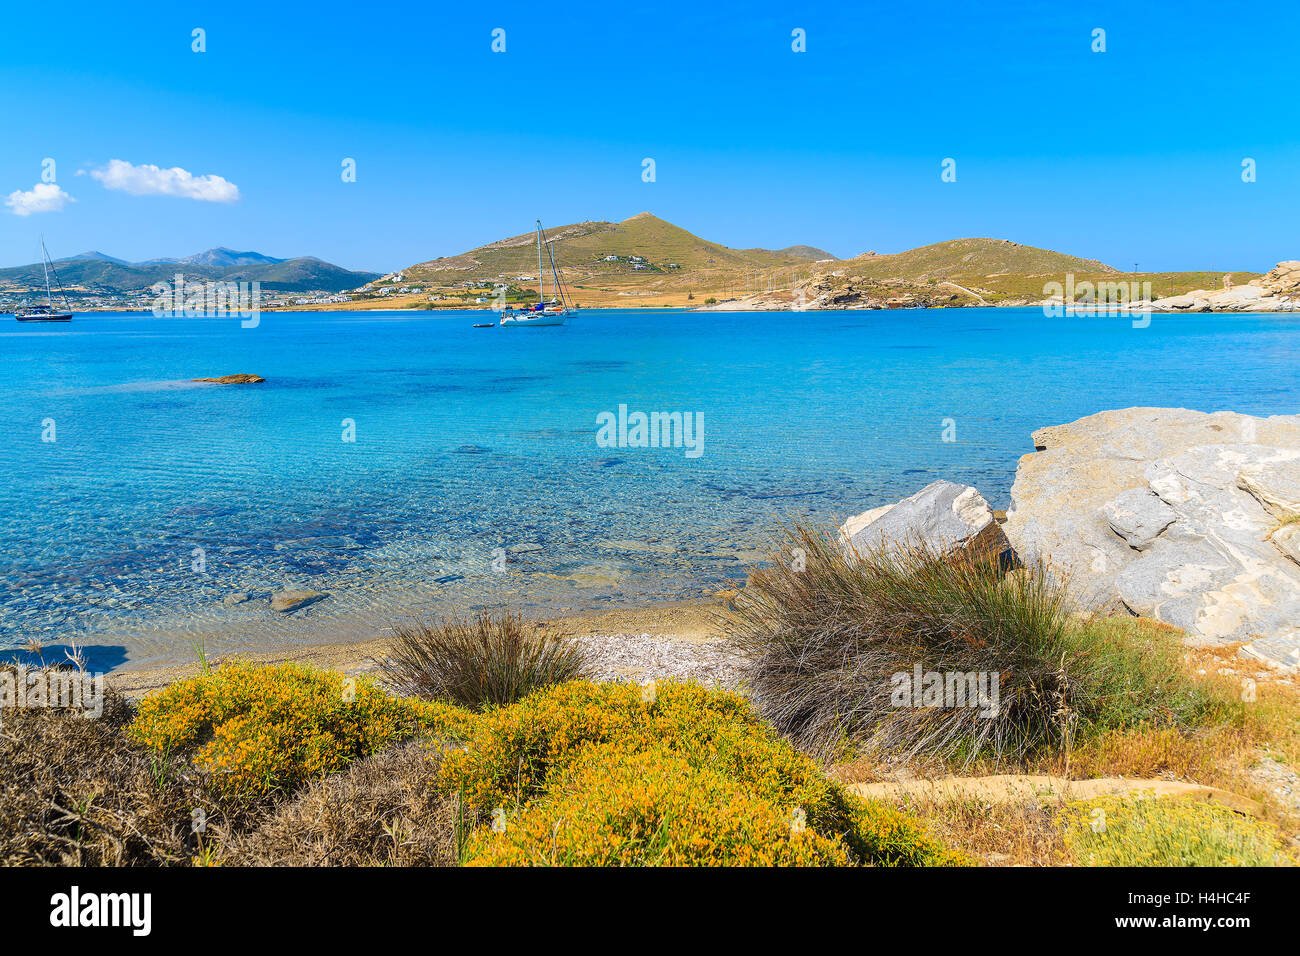 Frühlingsblumen in Monastiri Bucht mit türkisfarbenem Meerwasser, Insel Paros, Griechenland Stockfoto